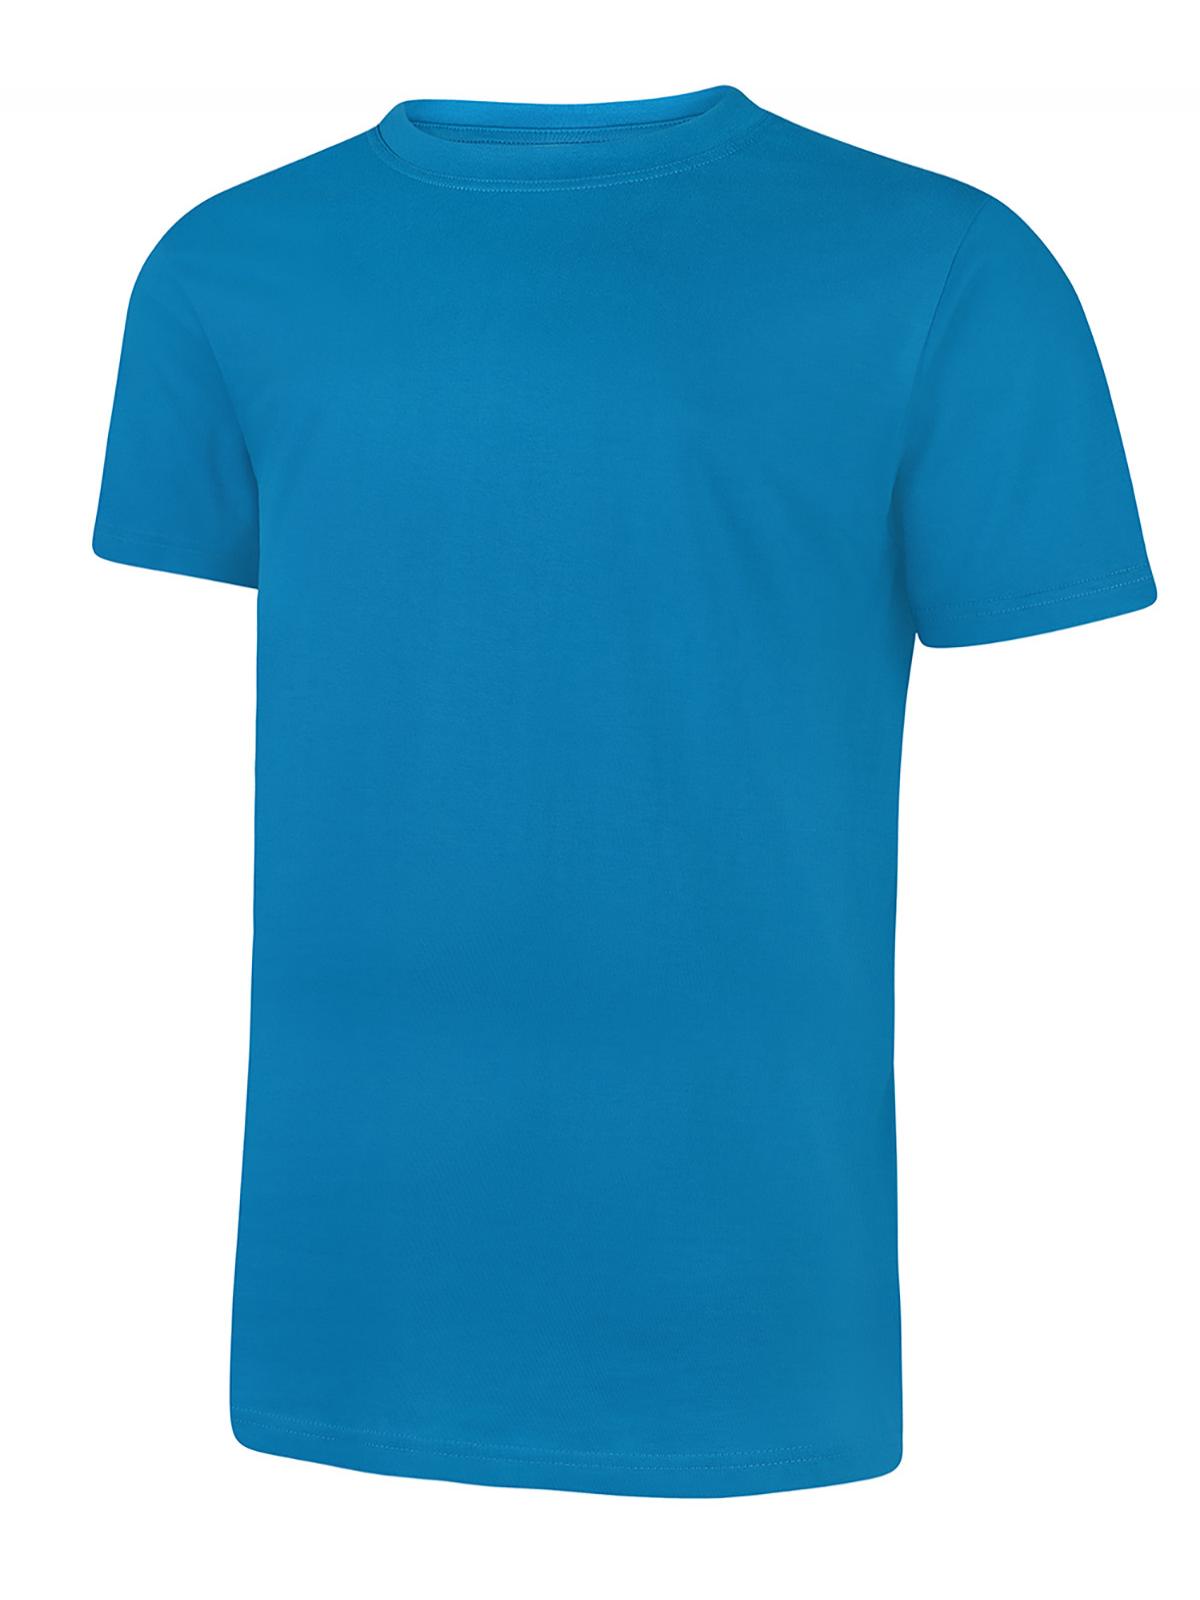 Uneek Classic T-shirt - Sapphire Blue